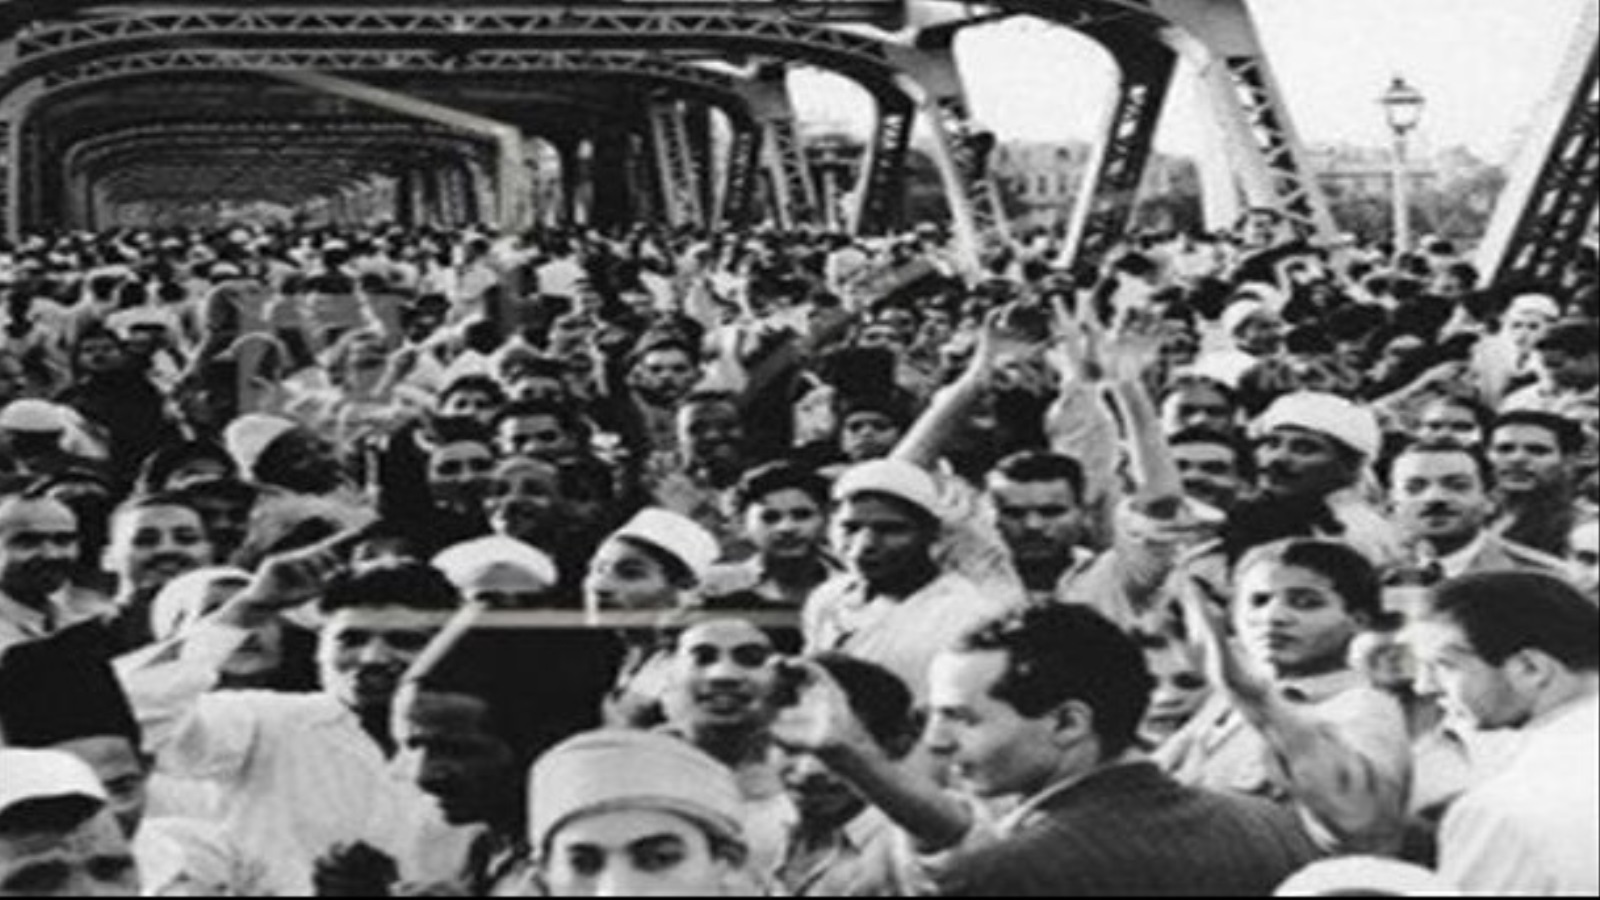 سرعان ما انقلب كل شيء رأسا على عقب في عام 1954، حيث تحوّلت آمال الطلاب ومطالبهم إلى كابوس قمعي استبدادي ينفخ في بوقه جمال عبد الناصر، وتم قمع كل حركات الاحتجاج الشعبي والعمالي بالقوة